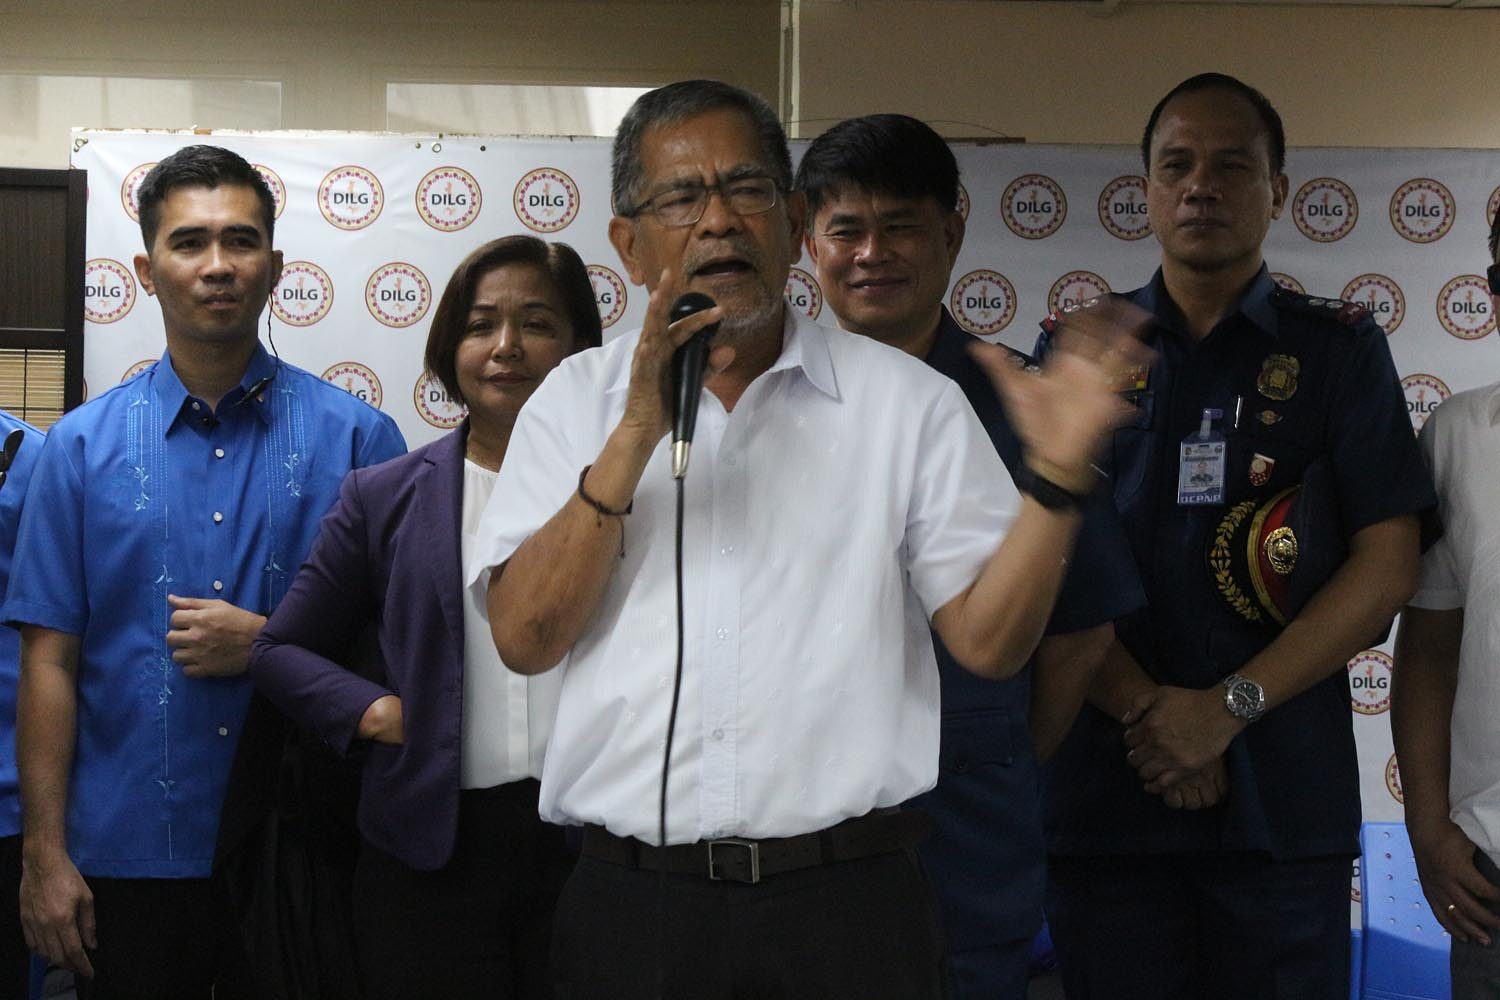 Sueno: ‘I’m a willing victim’ in Duterte’s fight vs corruption